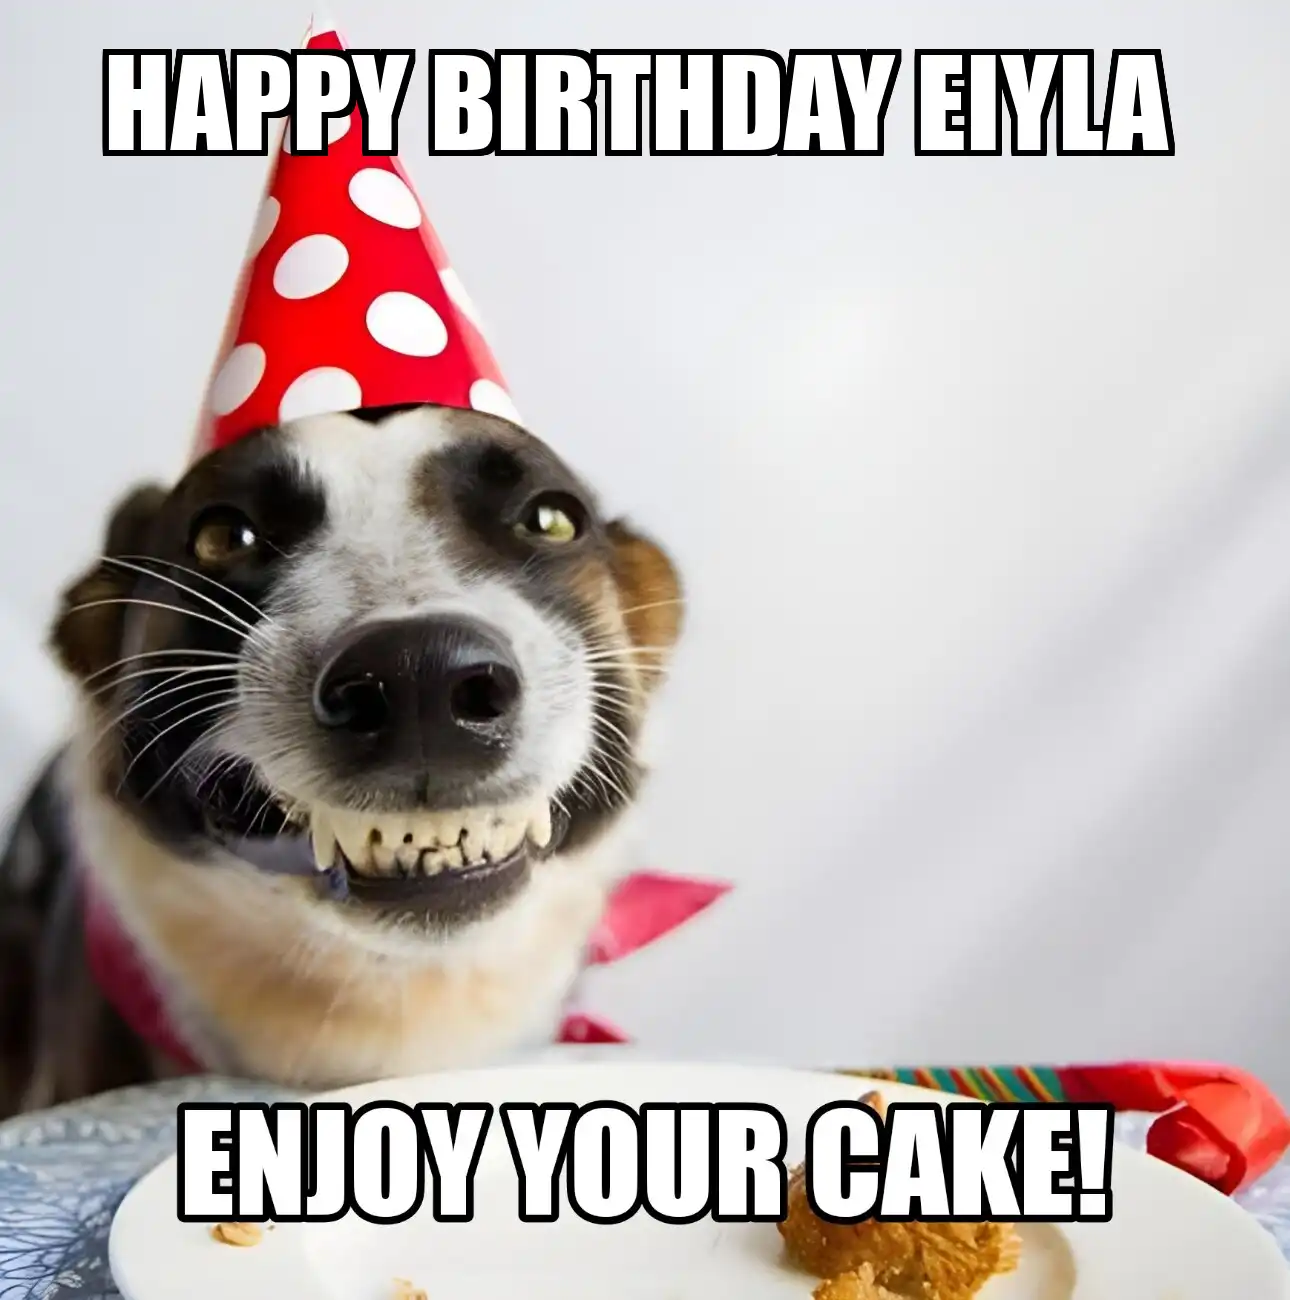 Happy Birthday Eiyla Enjoy Your Cake Dog Meme